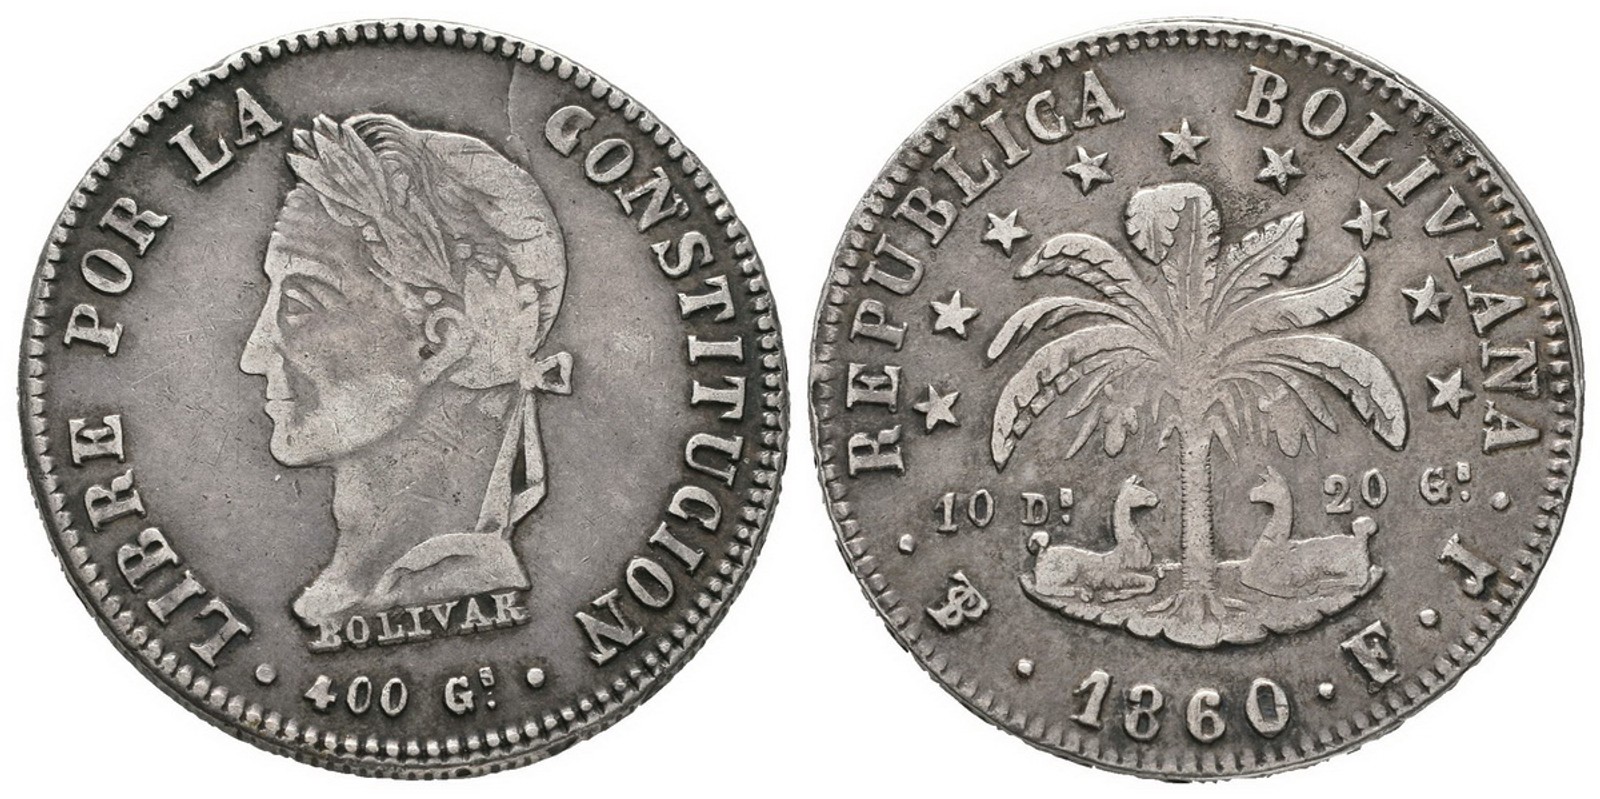 Bolívie, republika, 1825 -